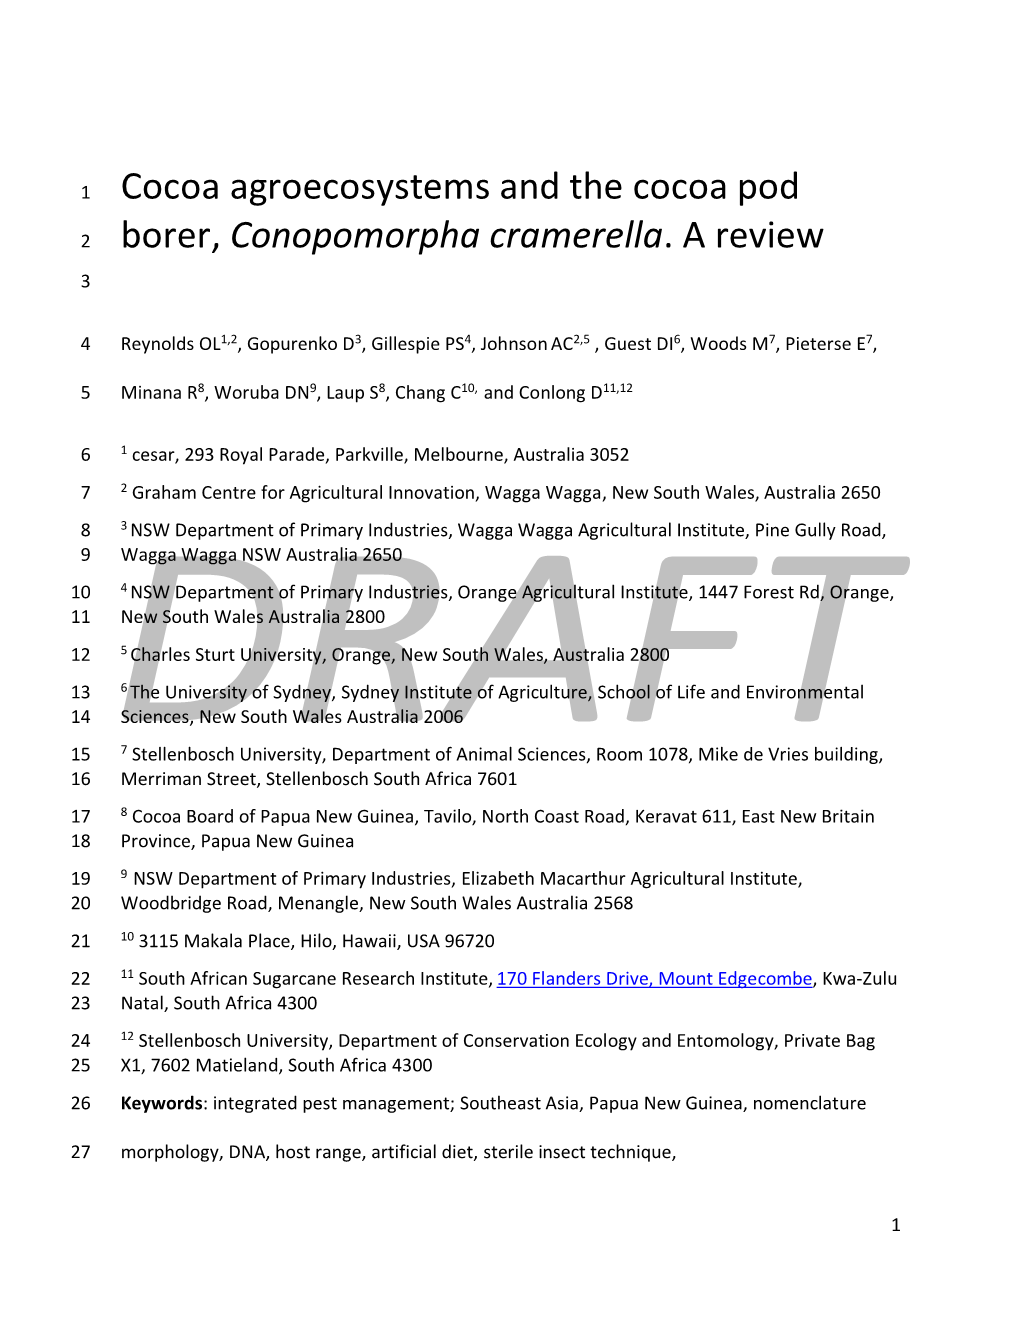 Cocoa Agroecosystems and the Cocoa Pod Borer, Conopomorpha